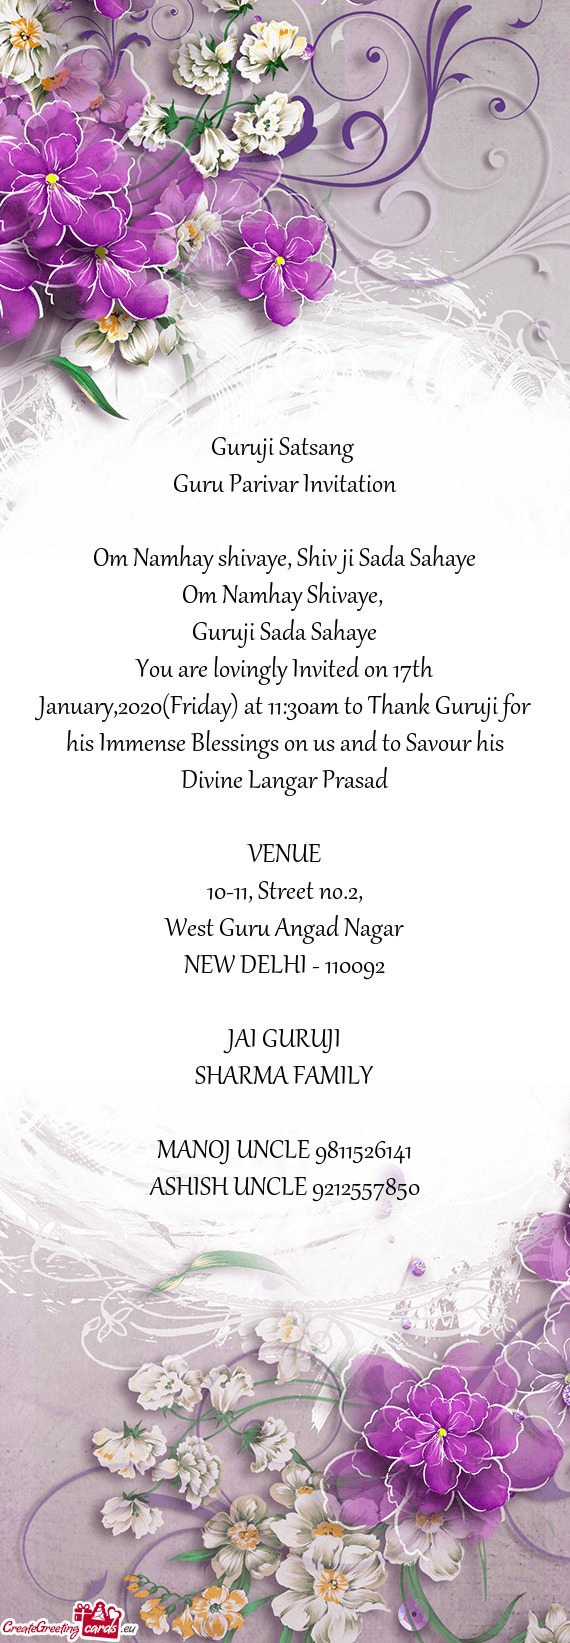 Guru Parivar Invitation